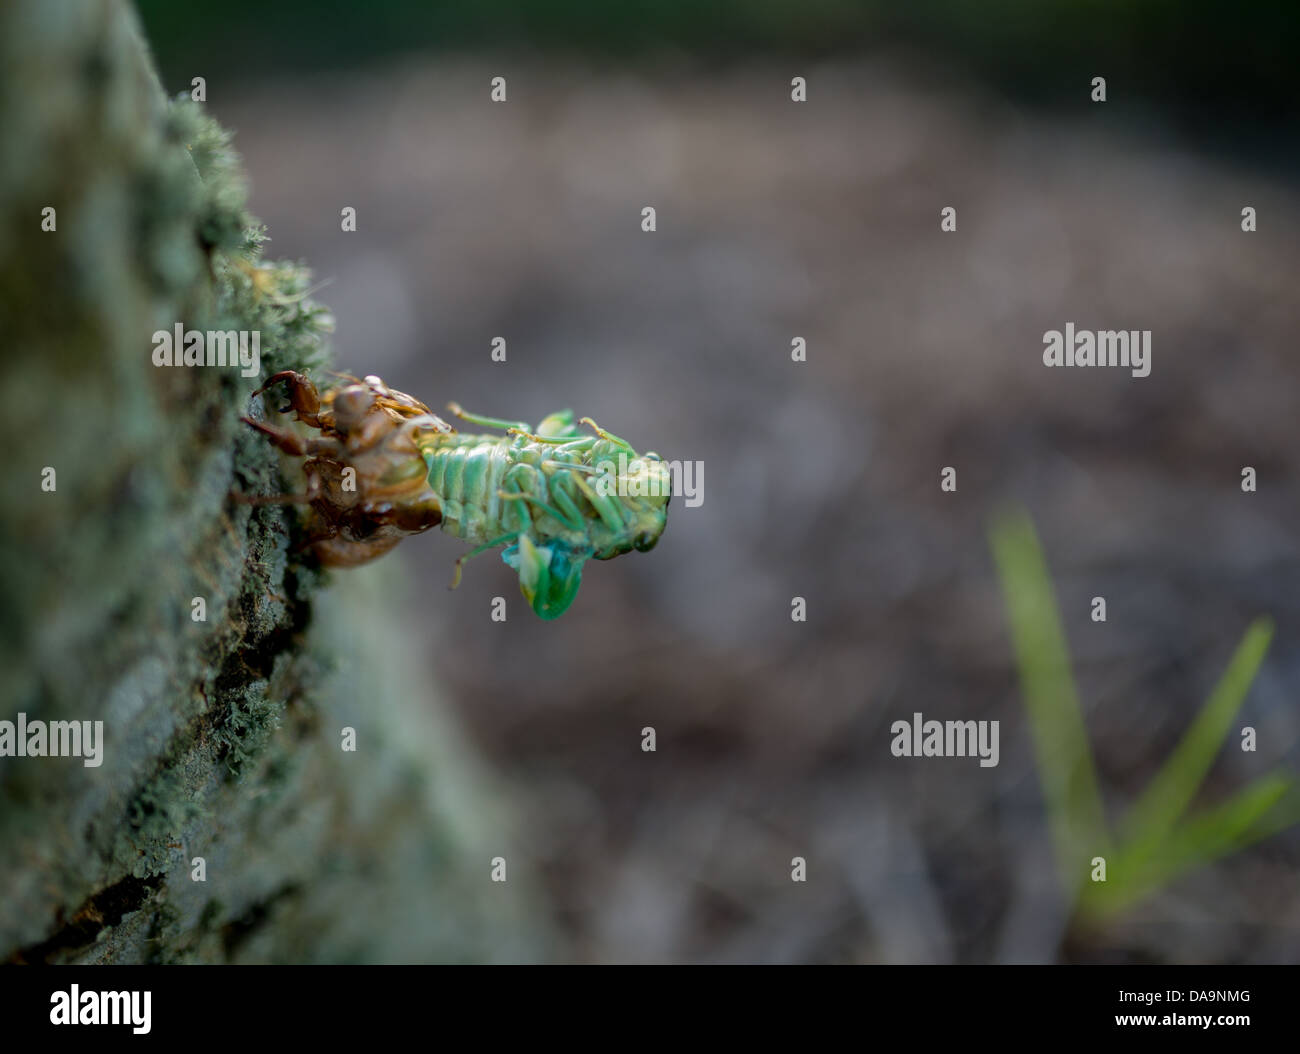 July 7th 2013, Cicada shedding from exoskeleton on tree. Stock Photo